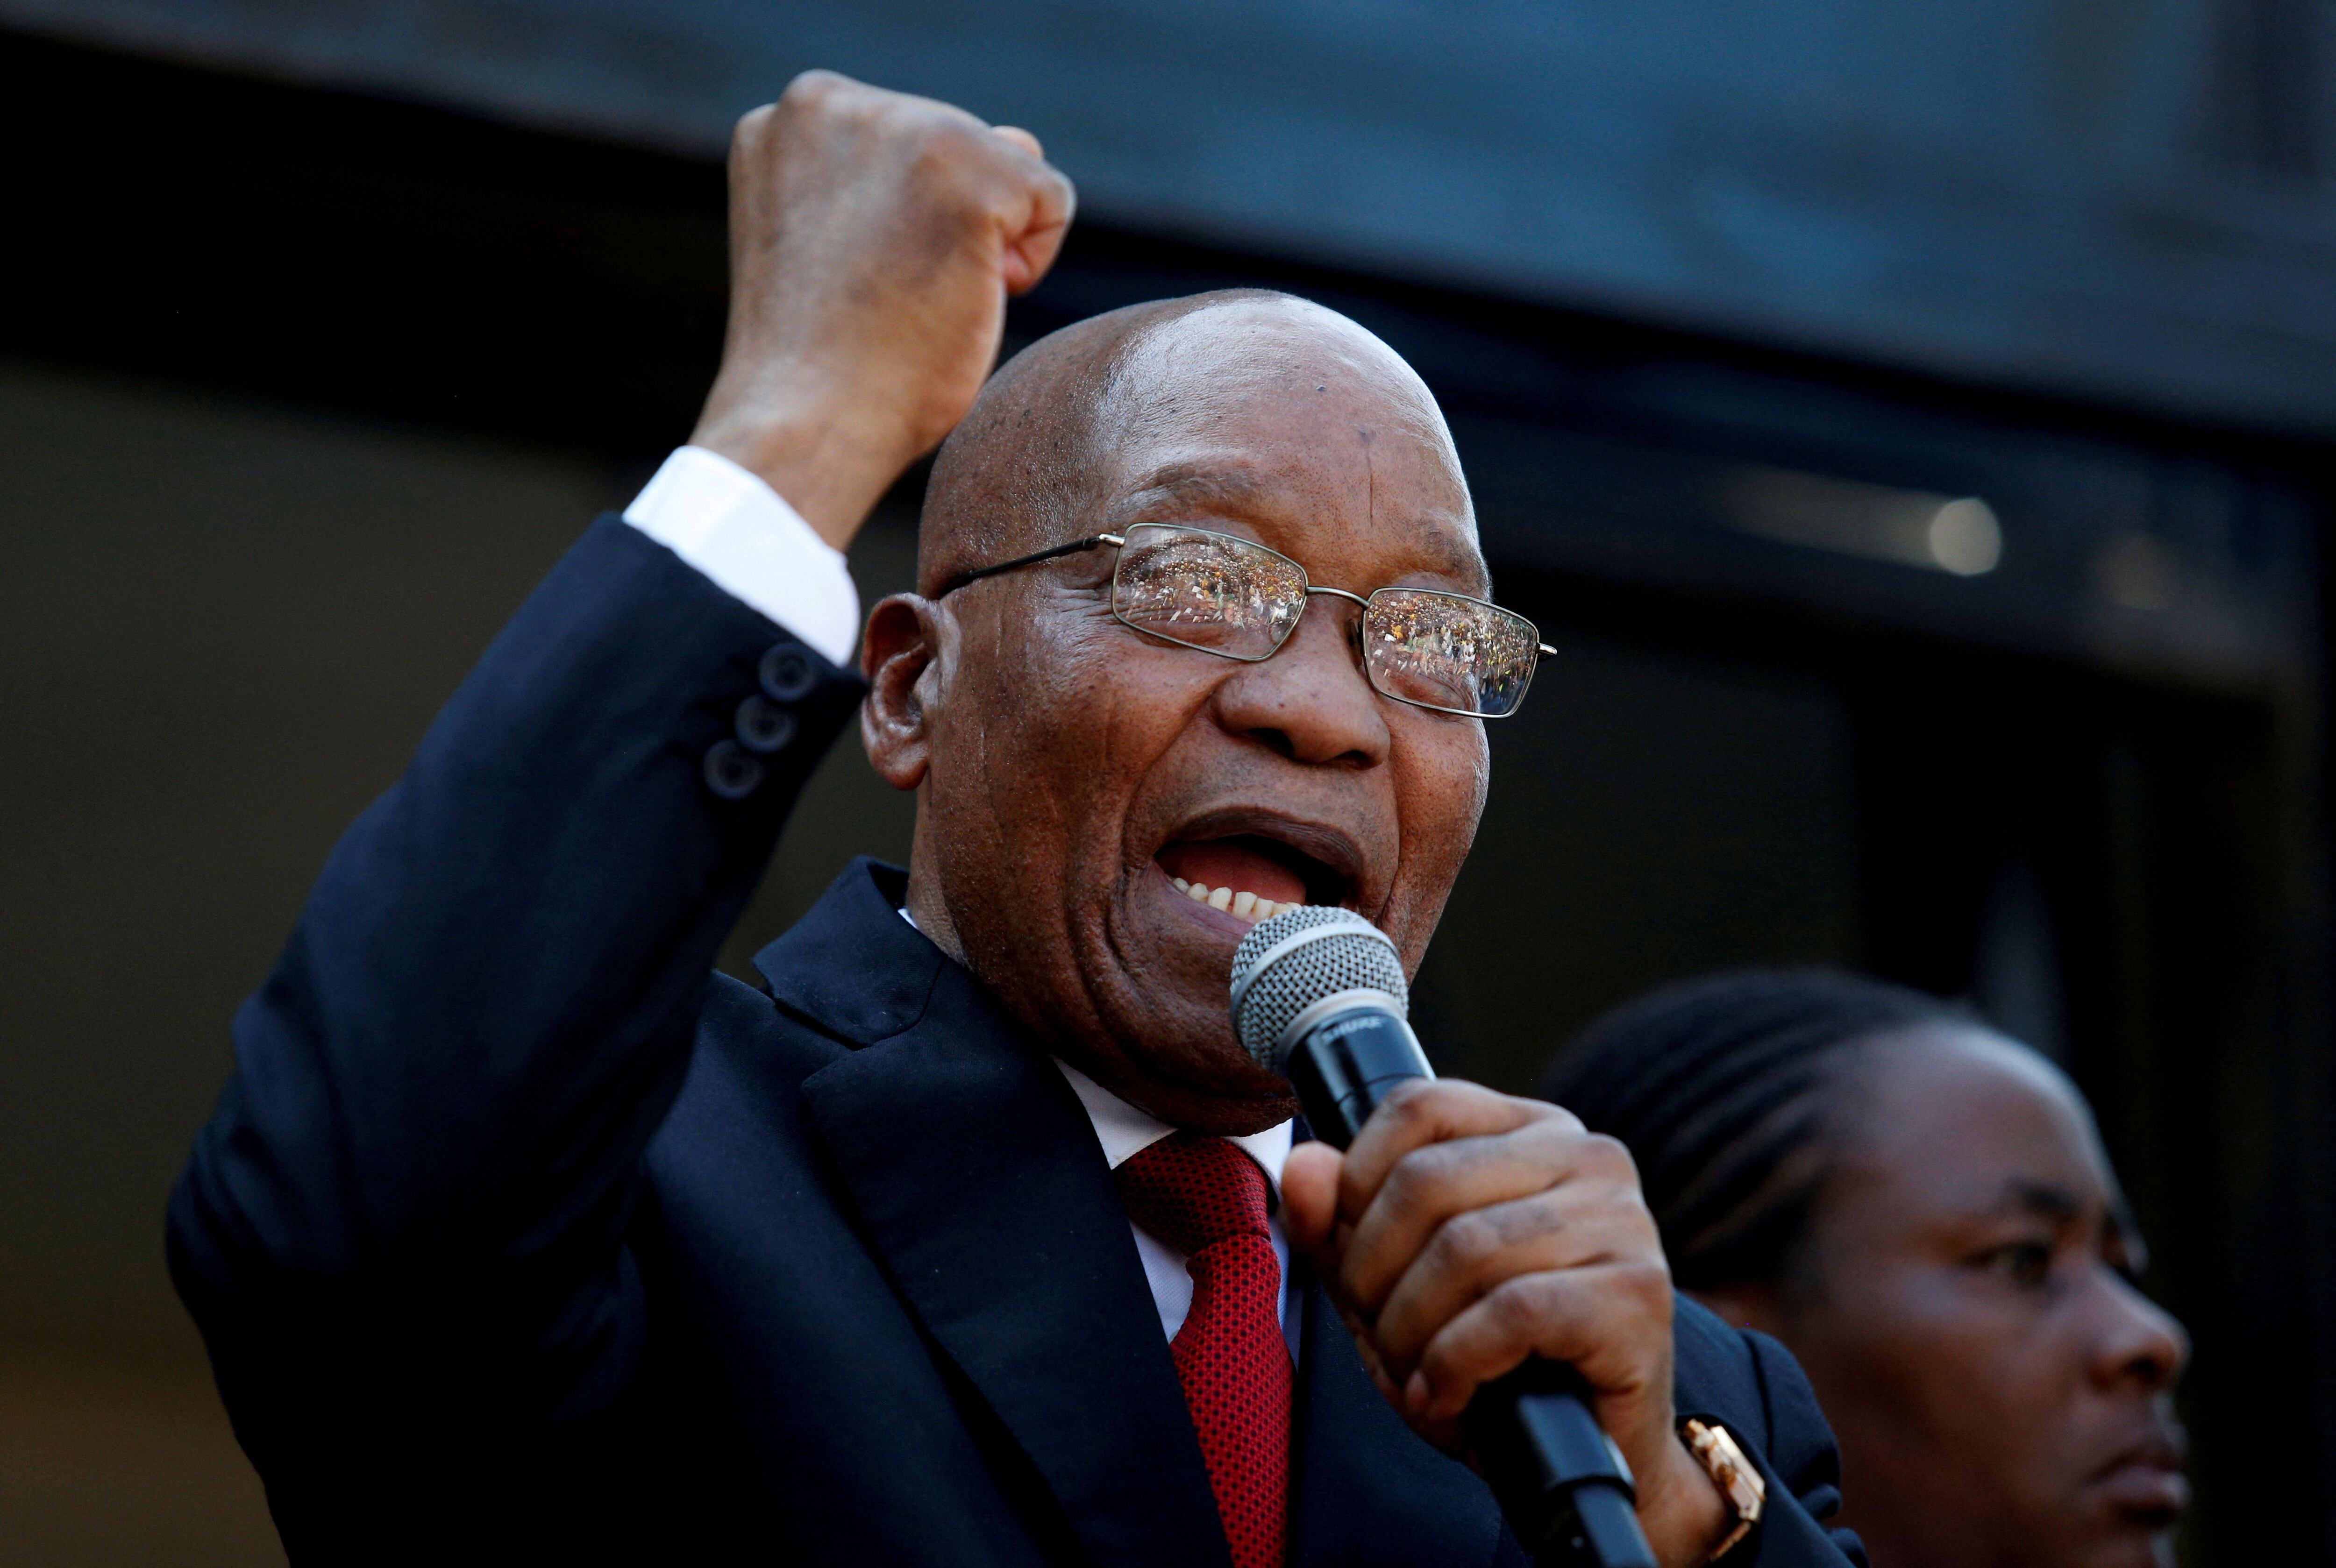 La Comisión Electoral de Sudáfrica rechazó la postulación del ex presidente Jacob Zuma, condenado en una causa por corrupción (REUTERS)